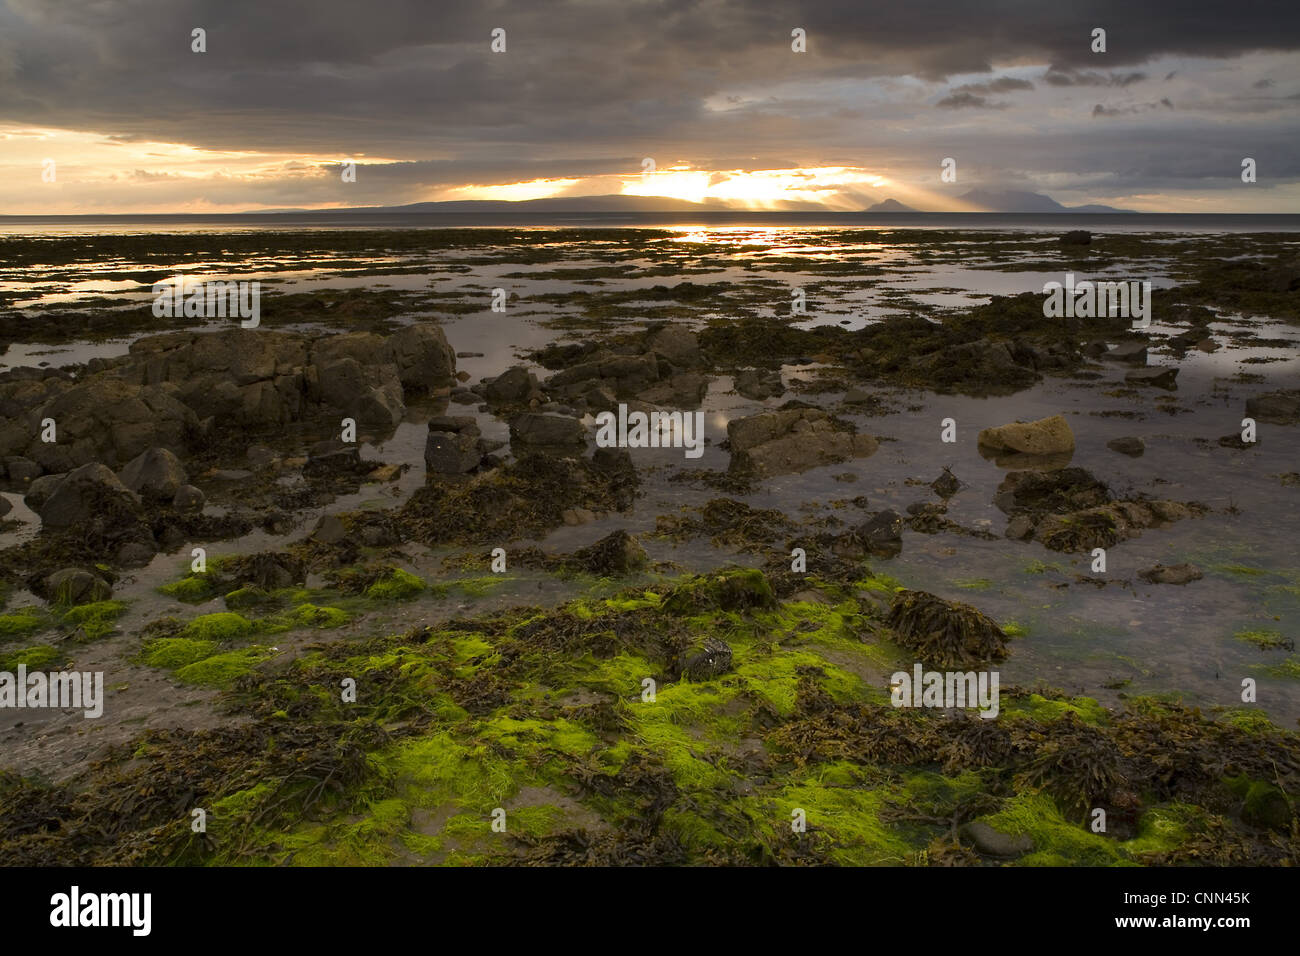 Coucher de soleil sur la côte rocheuse à marée basse, avec l'île d'Arran et Holy Island dans la distance, la baie de Culzean, South Ayrshire, Ecosse, juin Banque D'Images